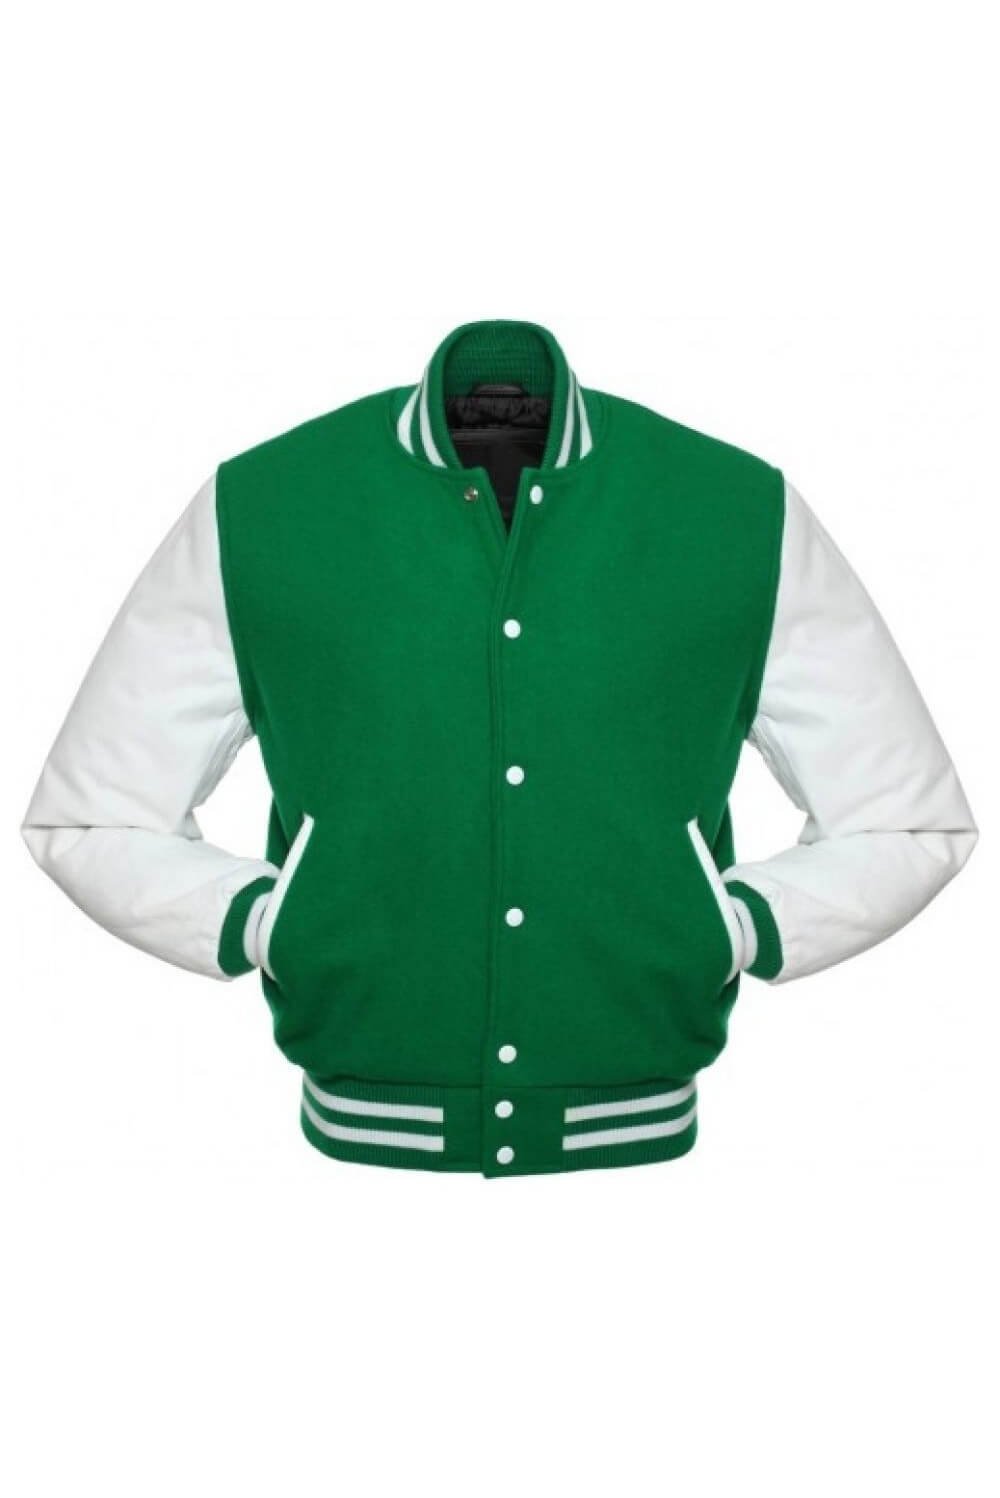 Green & White Standard Letterman Jacket